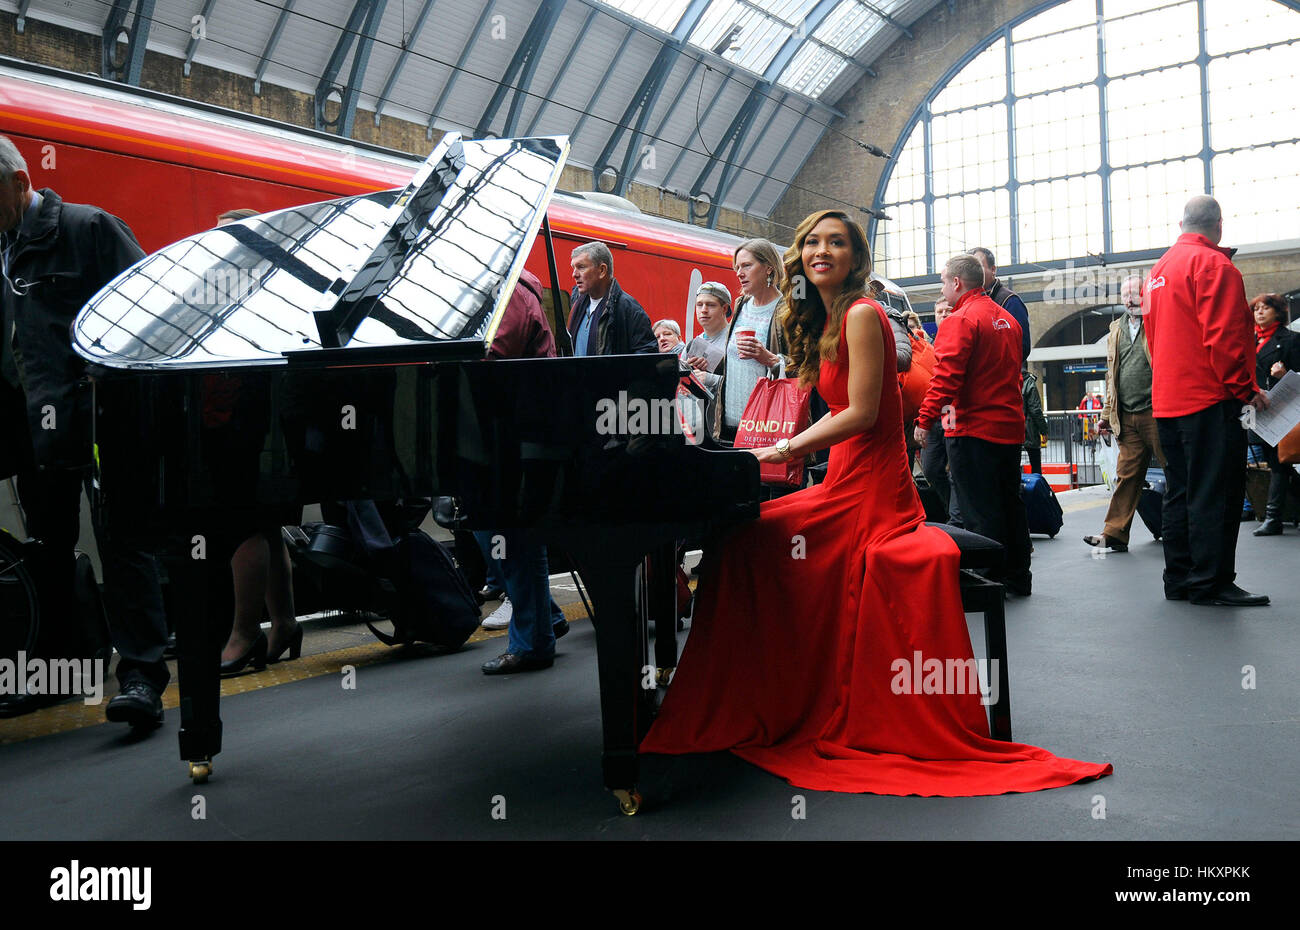 Myleene Klass gibt eine Live-Klavieraufführung auf einem kleinen Flügel am Bahnhof King's Cross in London, um den Abschluss einer 40Millionen £Investition von Virgin Trains in seine Flotte von Zügen der Ostküste zu markieren. Stockfoto